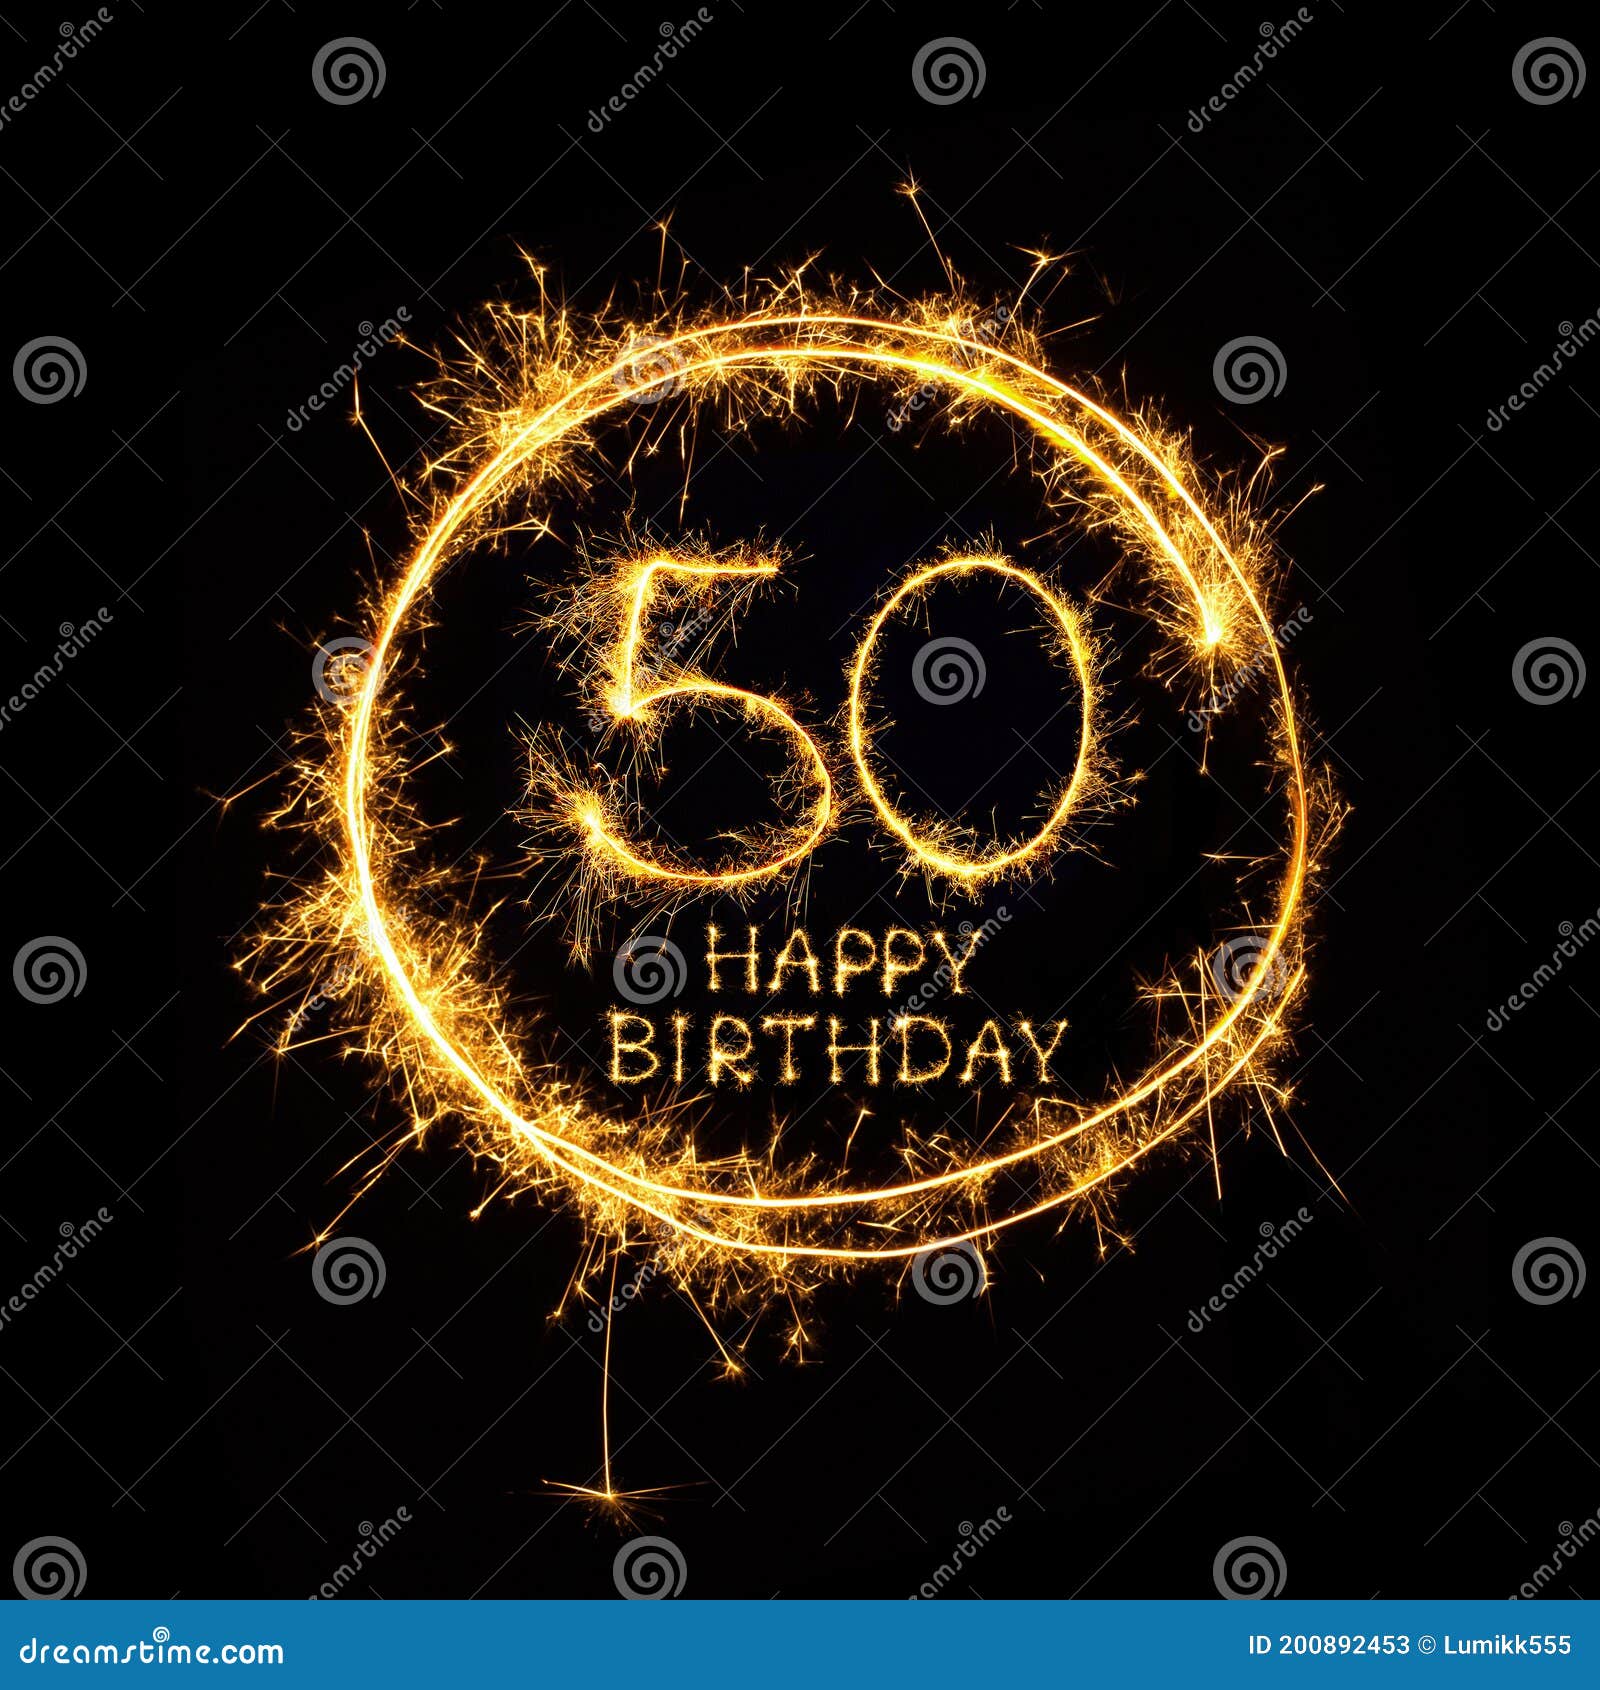 Sinh nhật lần thứ 50 là một dịp đáng kỷ niệm và tràn ngập niềm vui. Hình ảnh Happy 50th Birthday sẽ đem lại cho bạn cảm giác như đang xuất hiện trong một bữa tiệc đầy sáng tạo và lấp lánh hoa hồng. Hãy cùng chúc mừng và kỷ niệm ngày sinh nhật đặc biệt này.